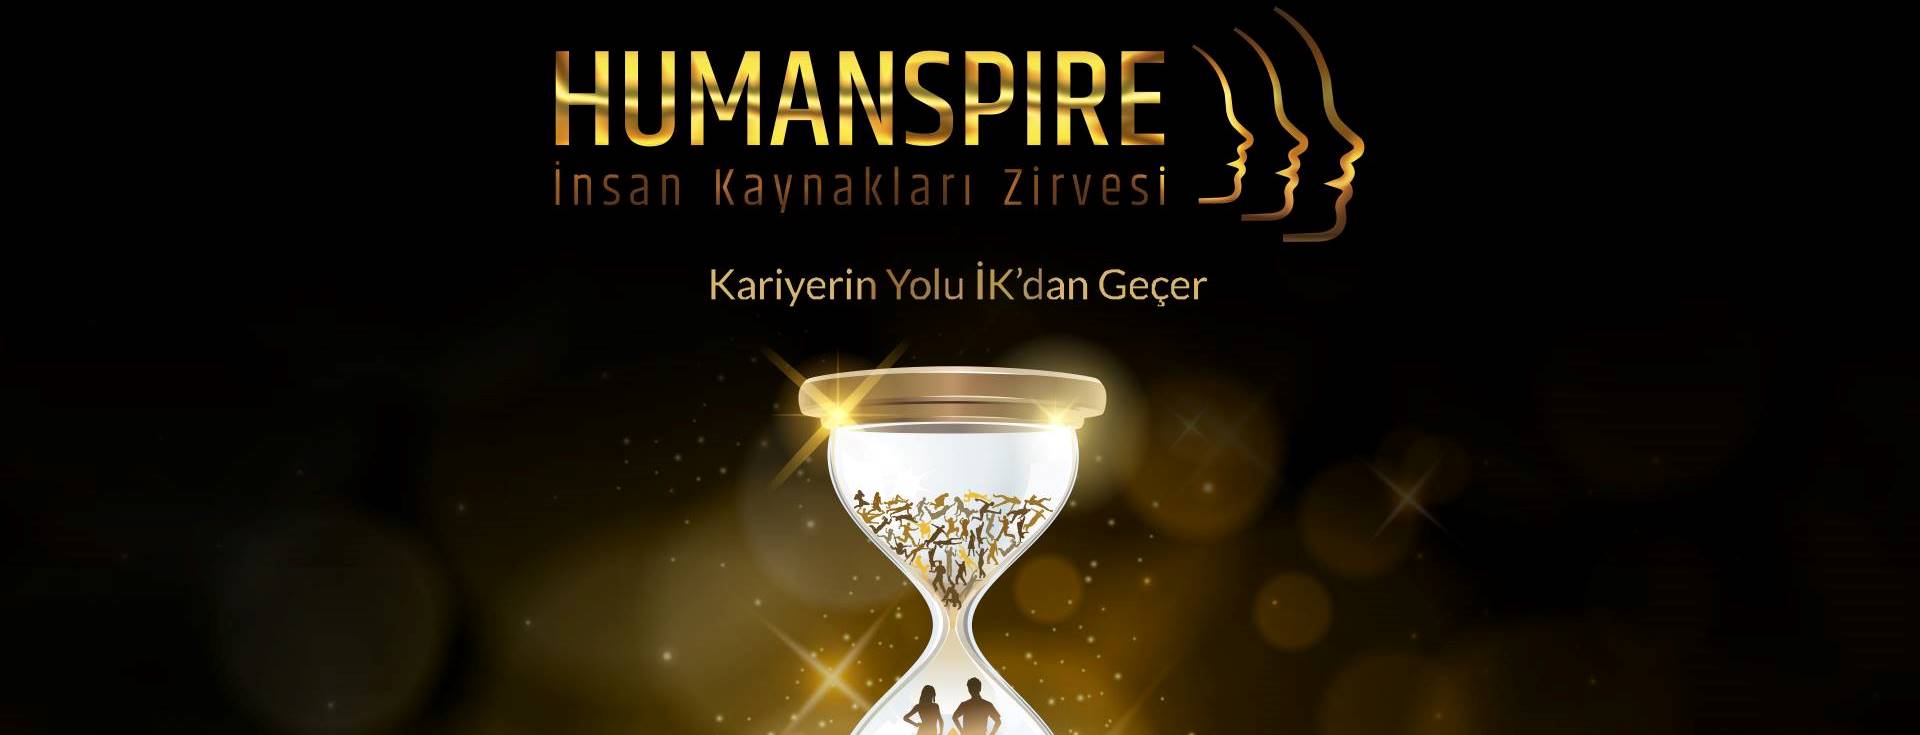 Humanspire 2017 Başlıyor